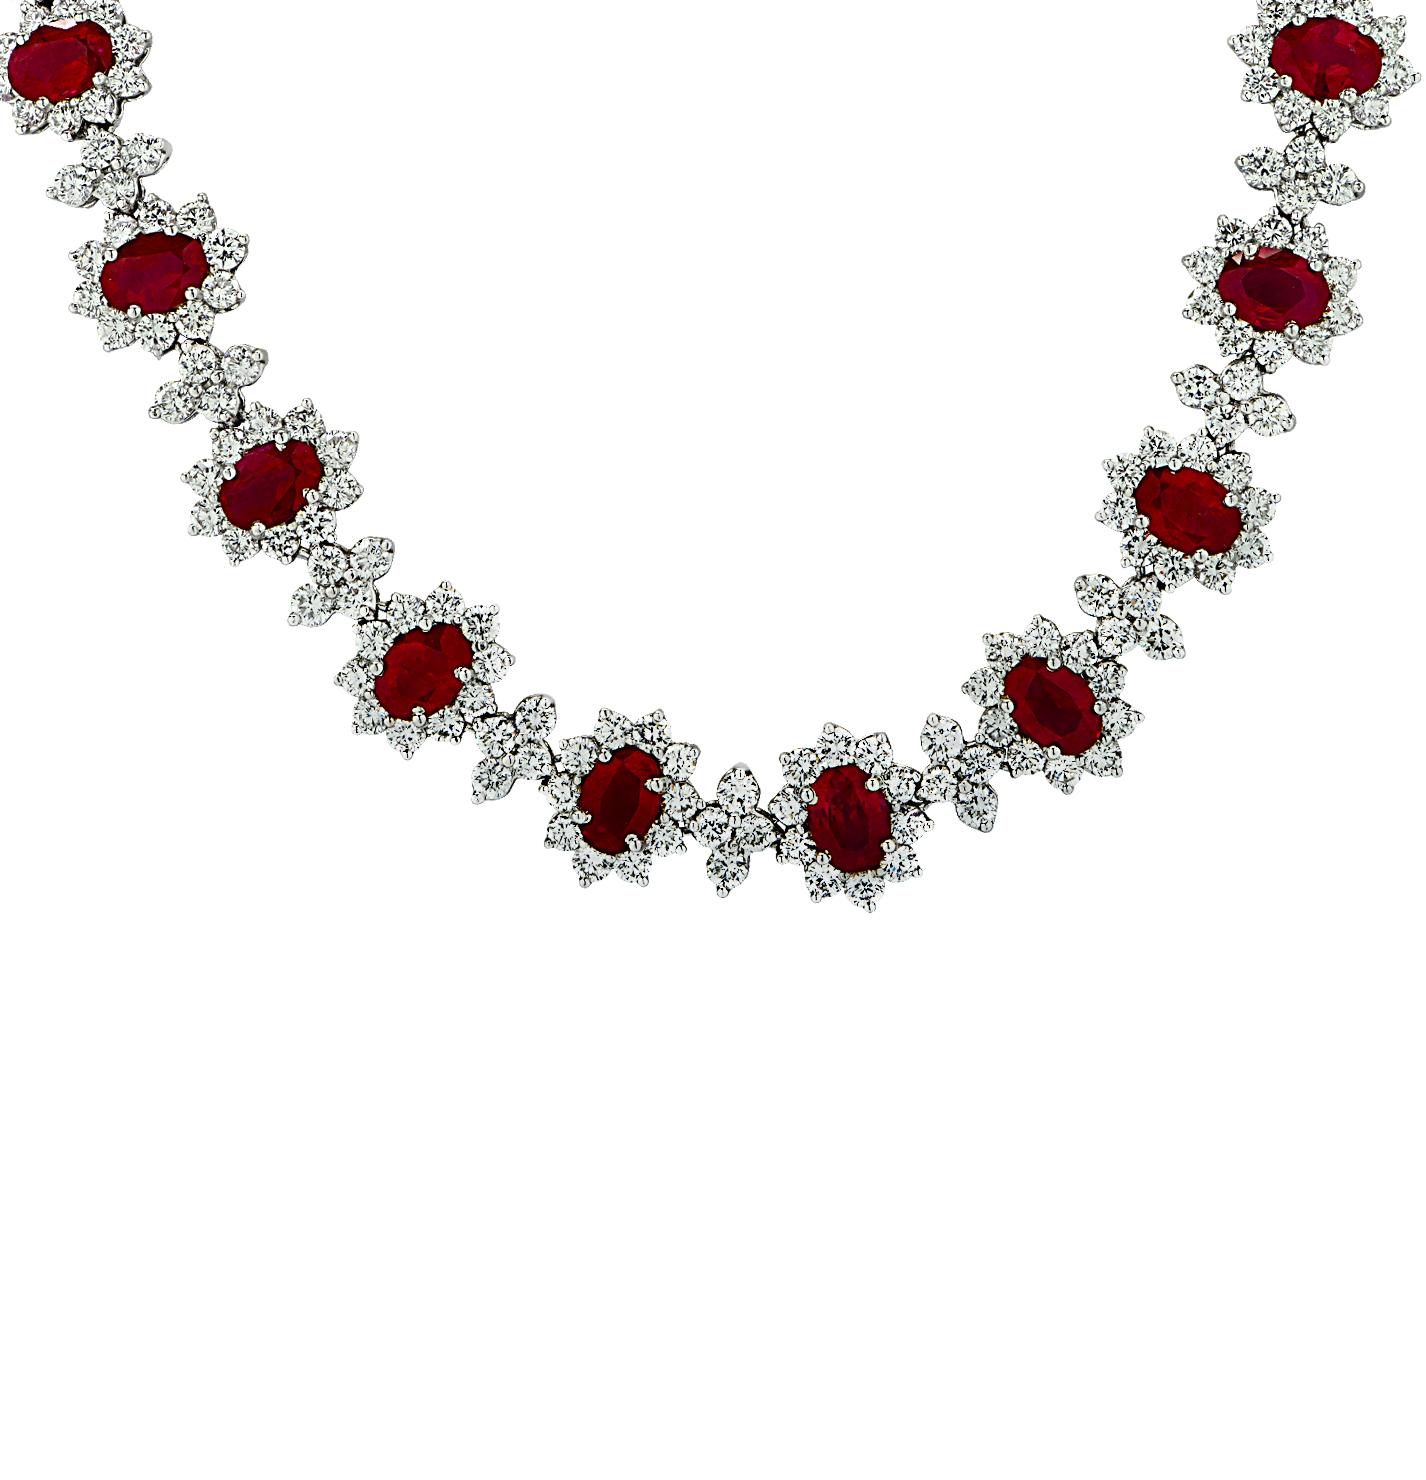 Sensationnel collier de diamants et rubis finement réalisé en platine, mettant en valeur des rubis rouges de Birmanie et des diamants blancs pesant au total environ 47,25 carats. Ce collier exceptionnel met en valeur 406 diamants ronds de taille